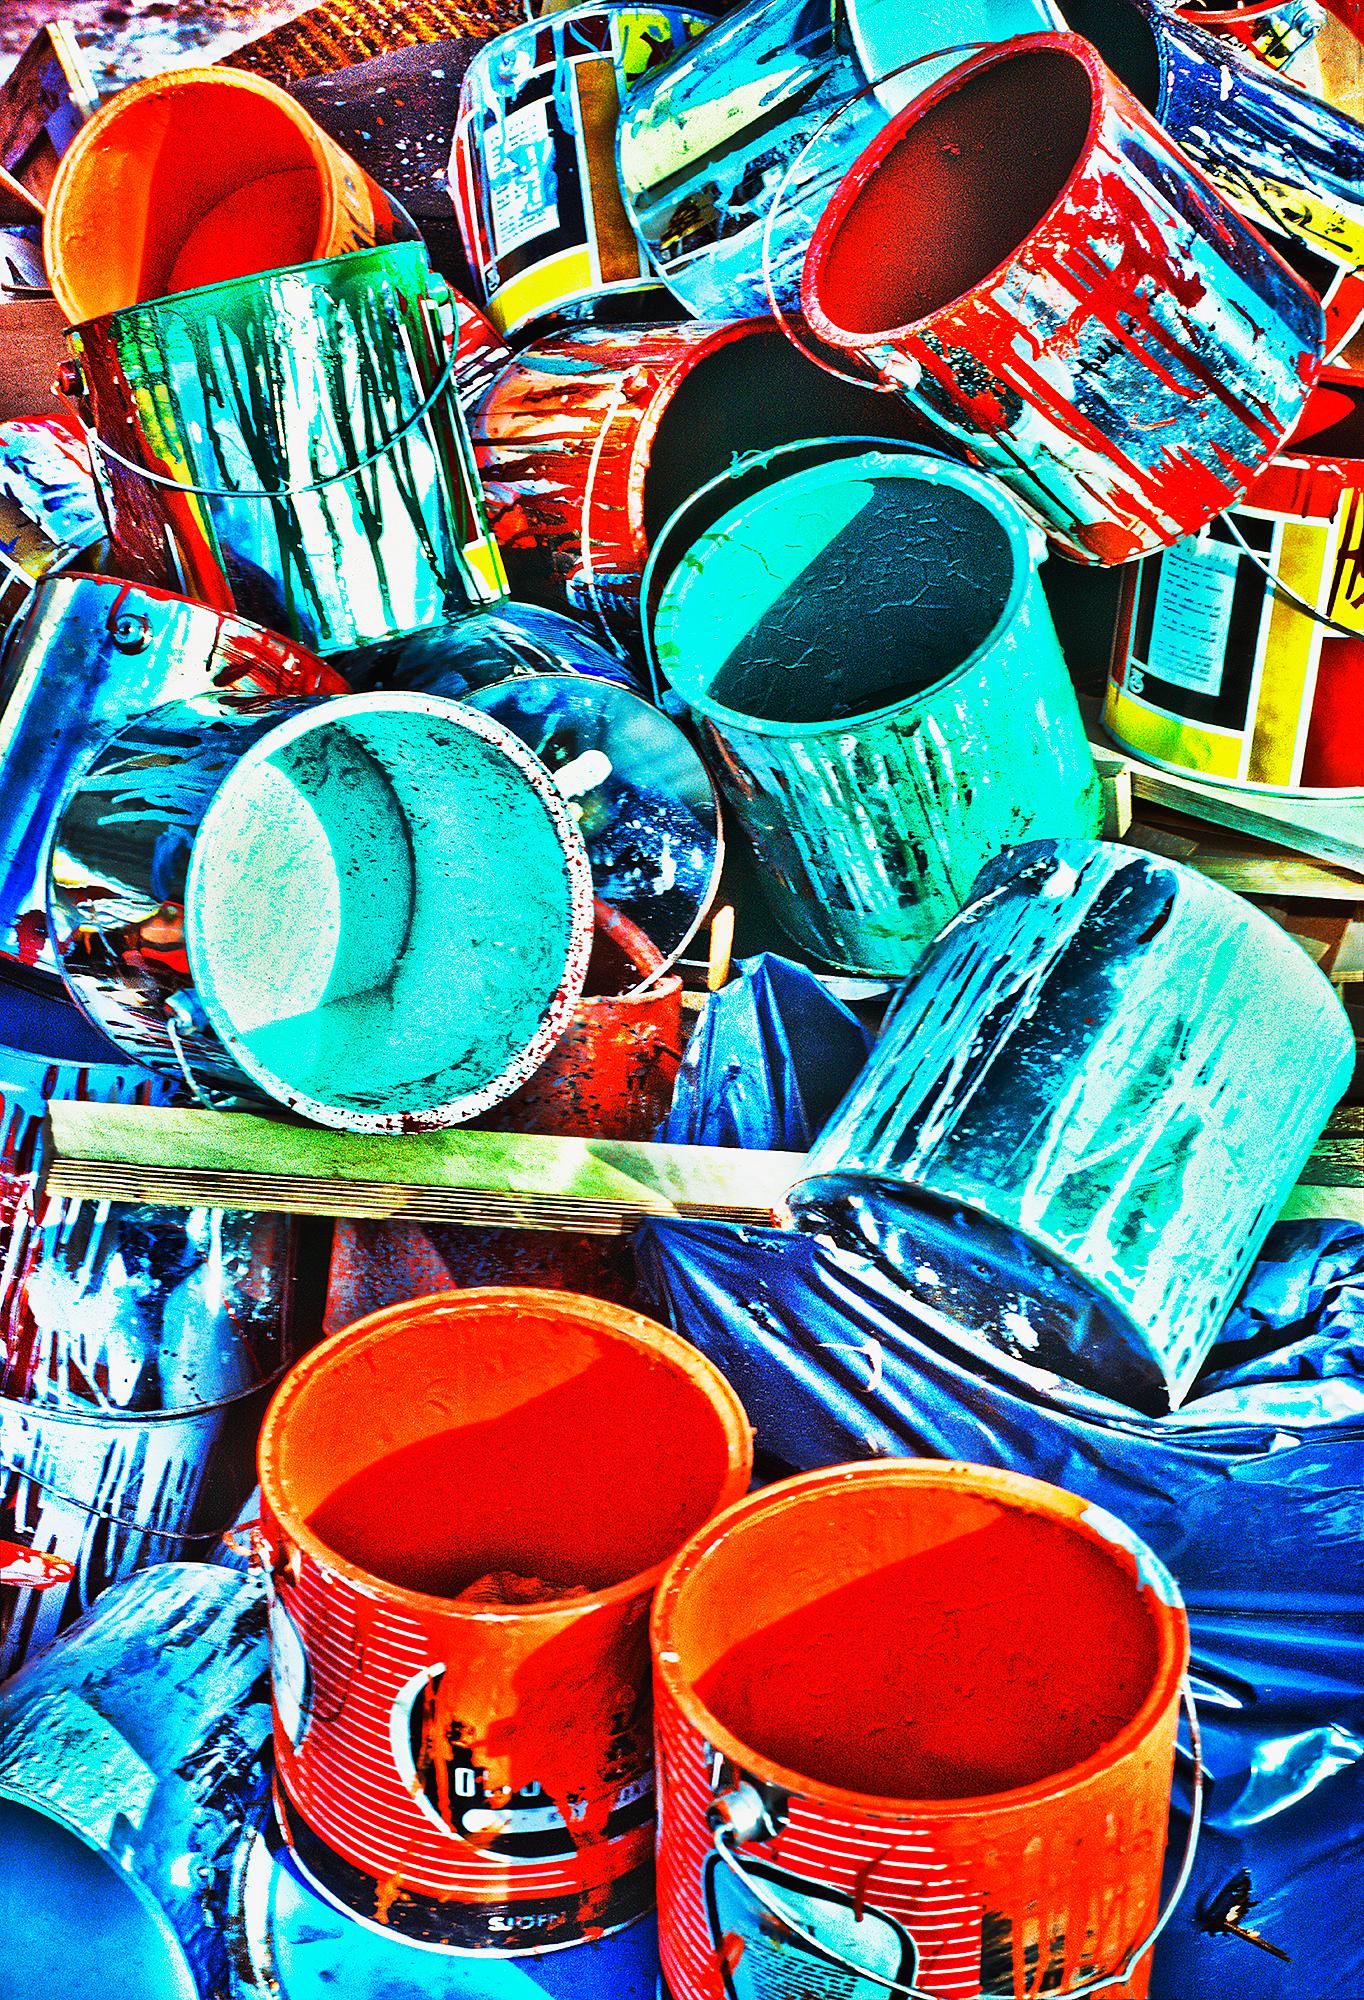 Abstract Photograph Mitchell Funk - Cannes de peinture colorées en rouge, orange, bleu et turquoise 